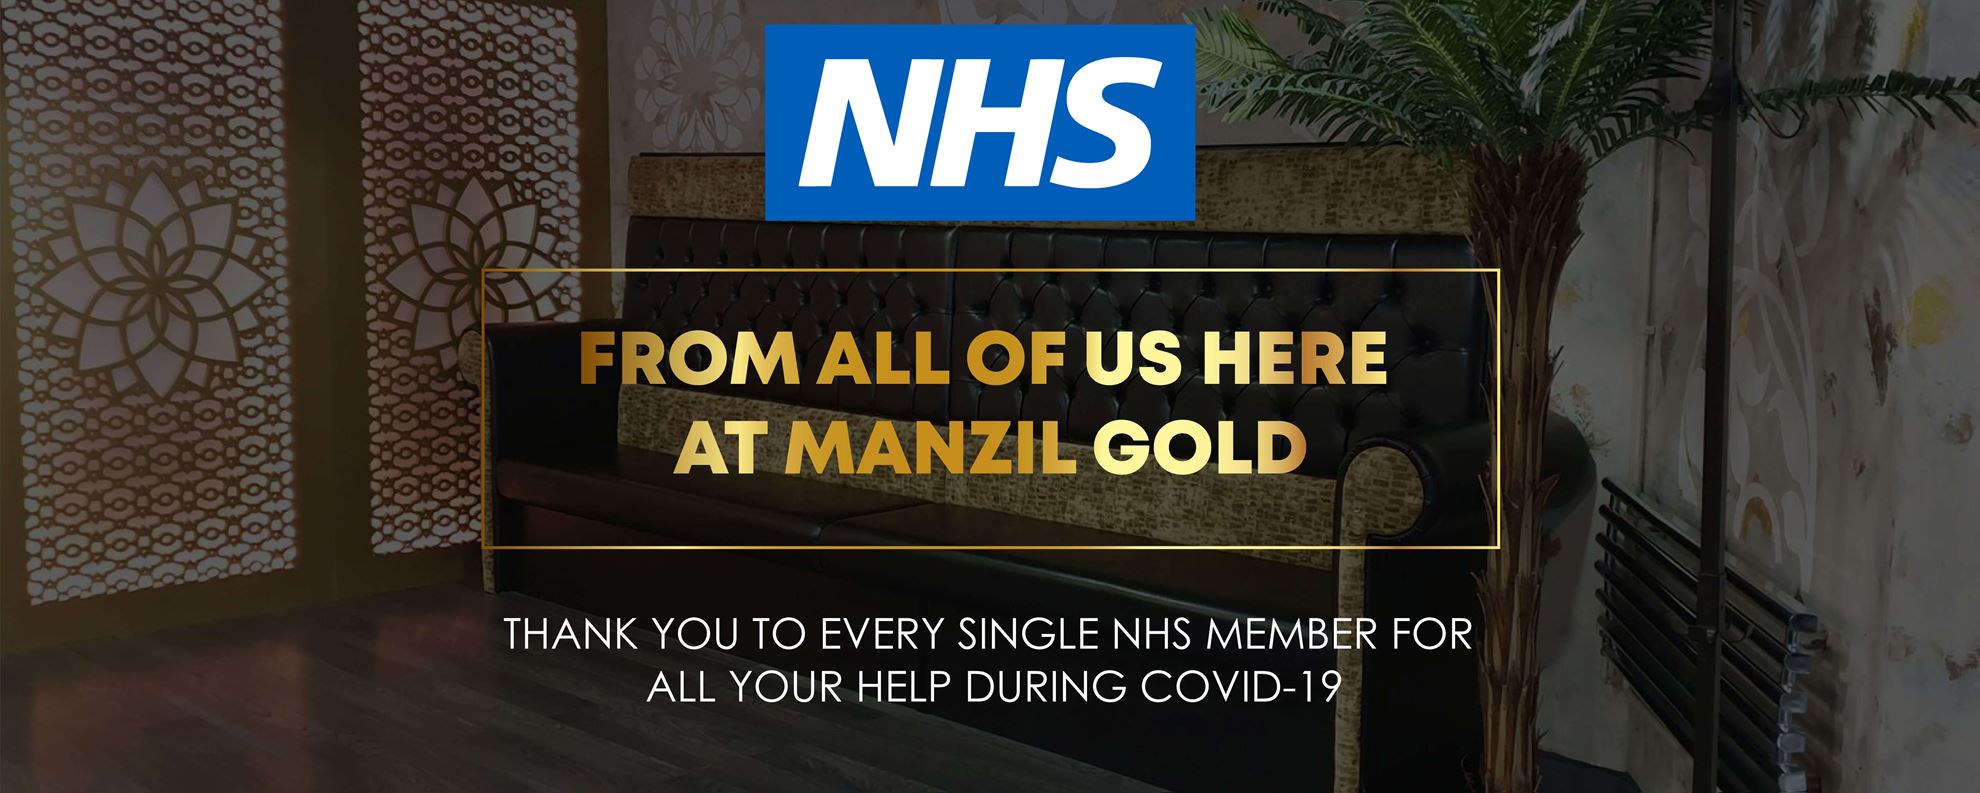 Manzil Gold